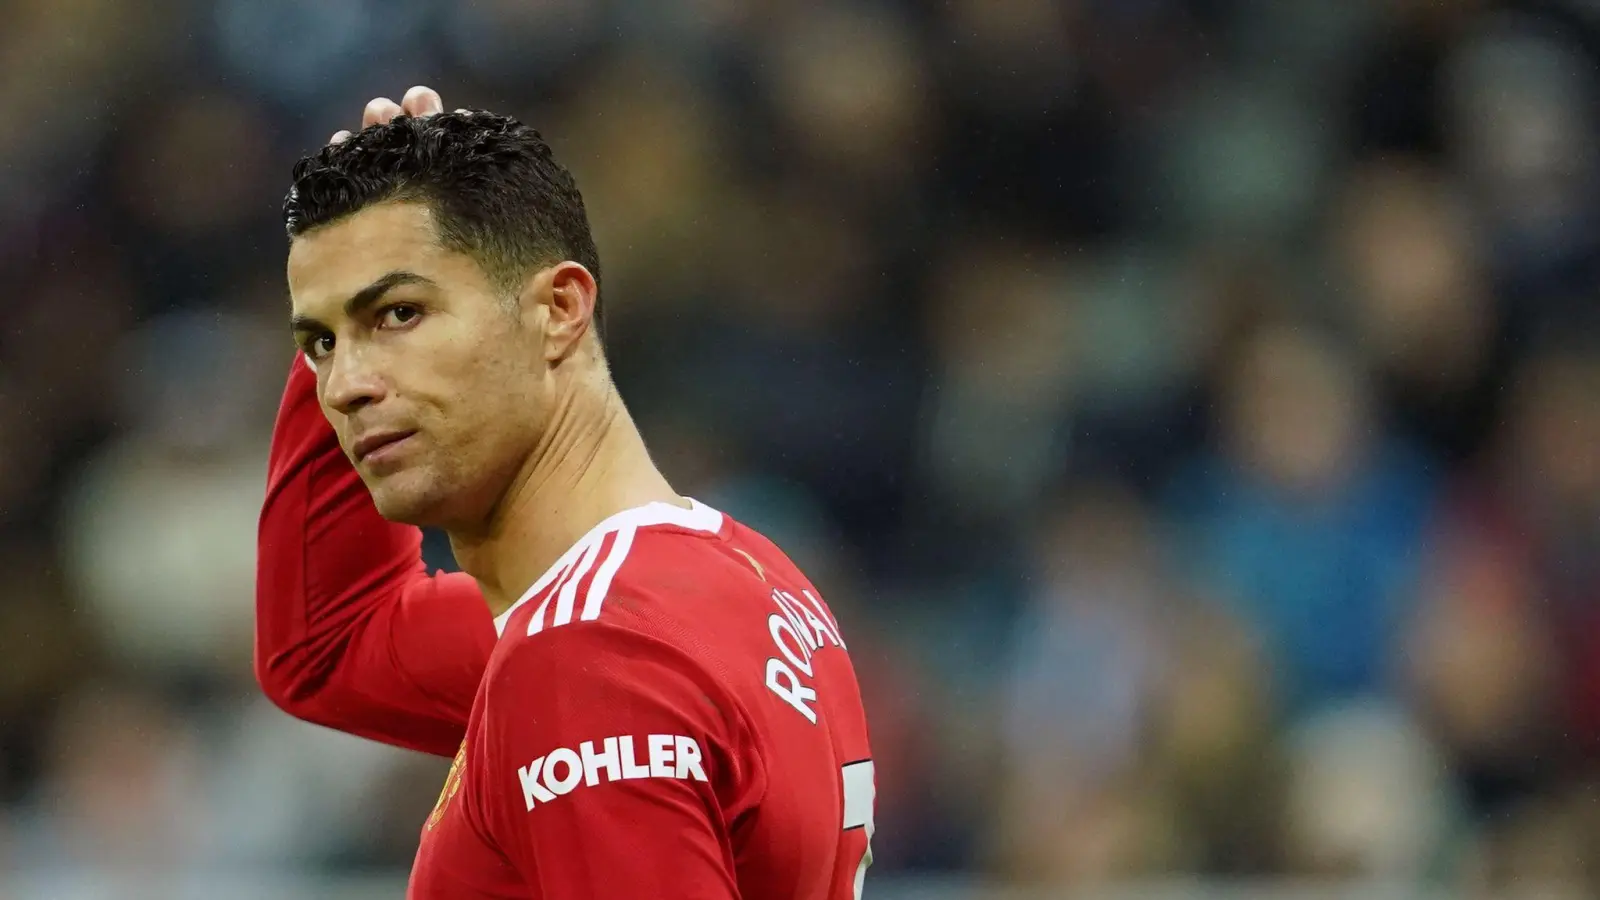 Steht vor einem Wechsel nach Saudi-Arabien: Cristiano Ronaldo. (Foto: Jon Super/AP/dpa)